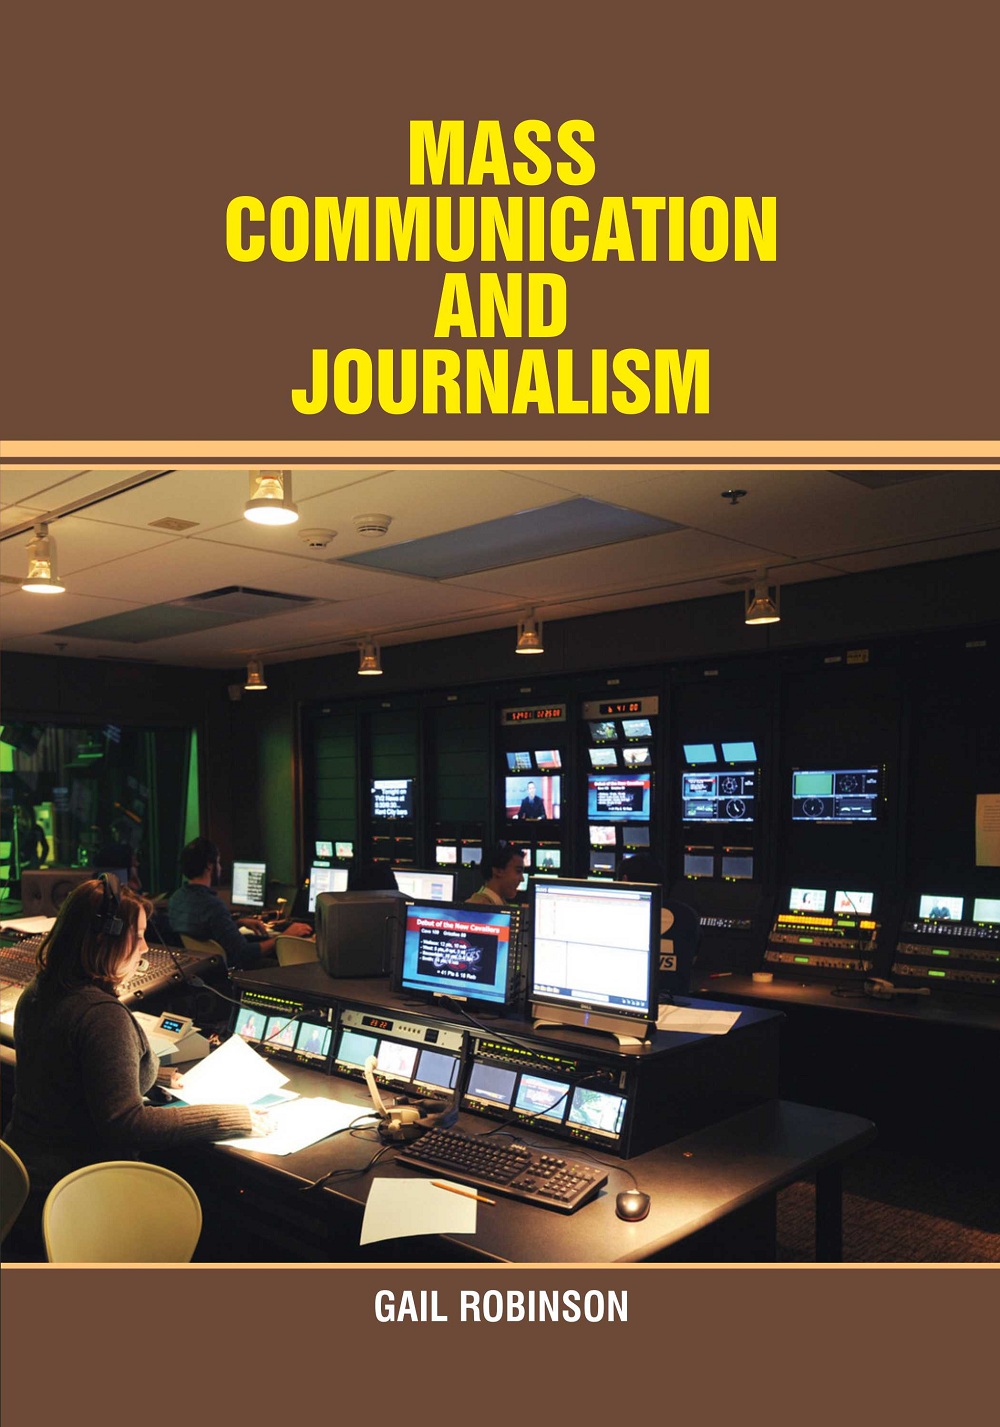 Mass Commnunication and Journalism